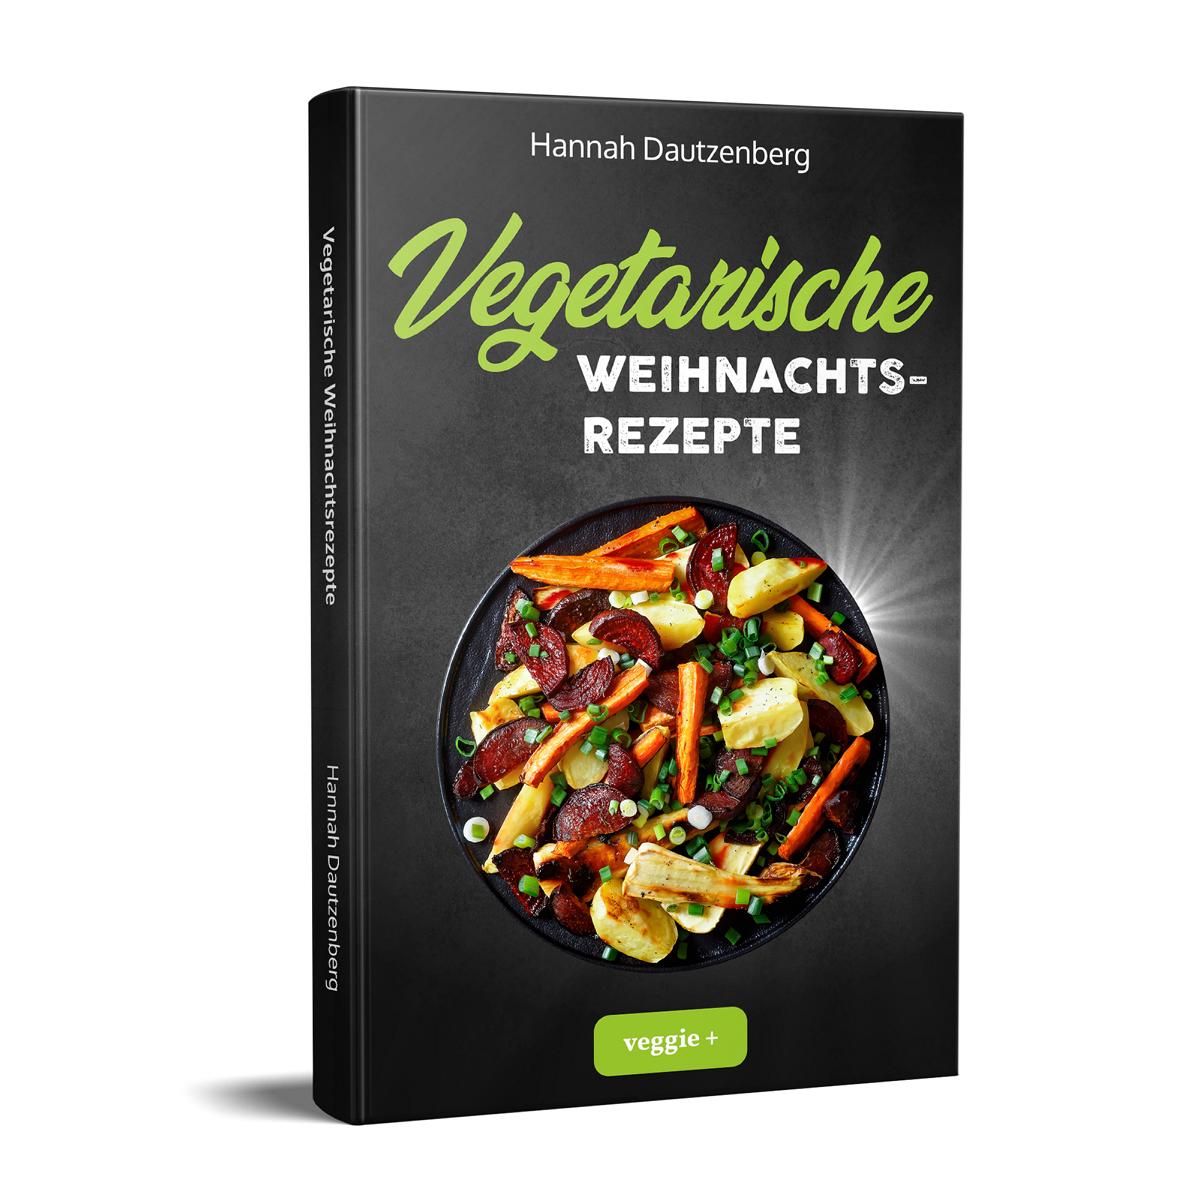 Vegetarische Weihnachtsrezepte: Das große vegetarische Kochbuch für leckere Gerichte an Weihnachten von Hannah Dautzenberg im veggie + Verlag